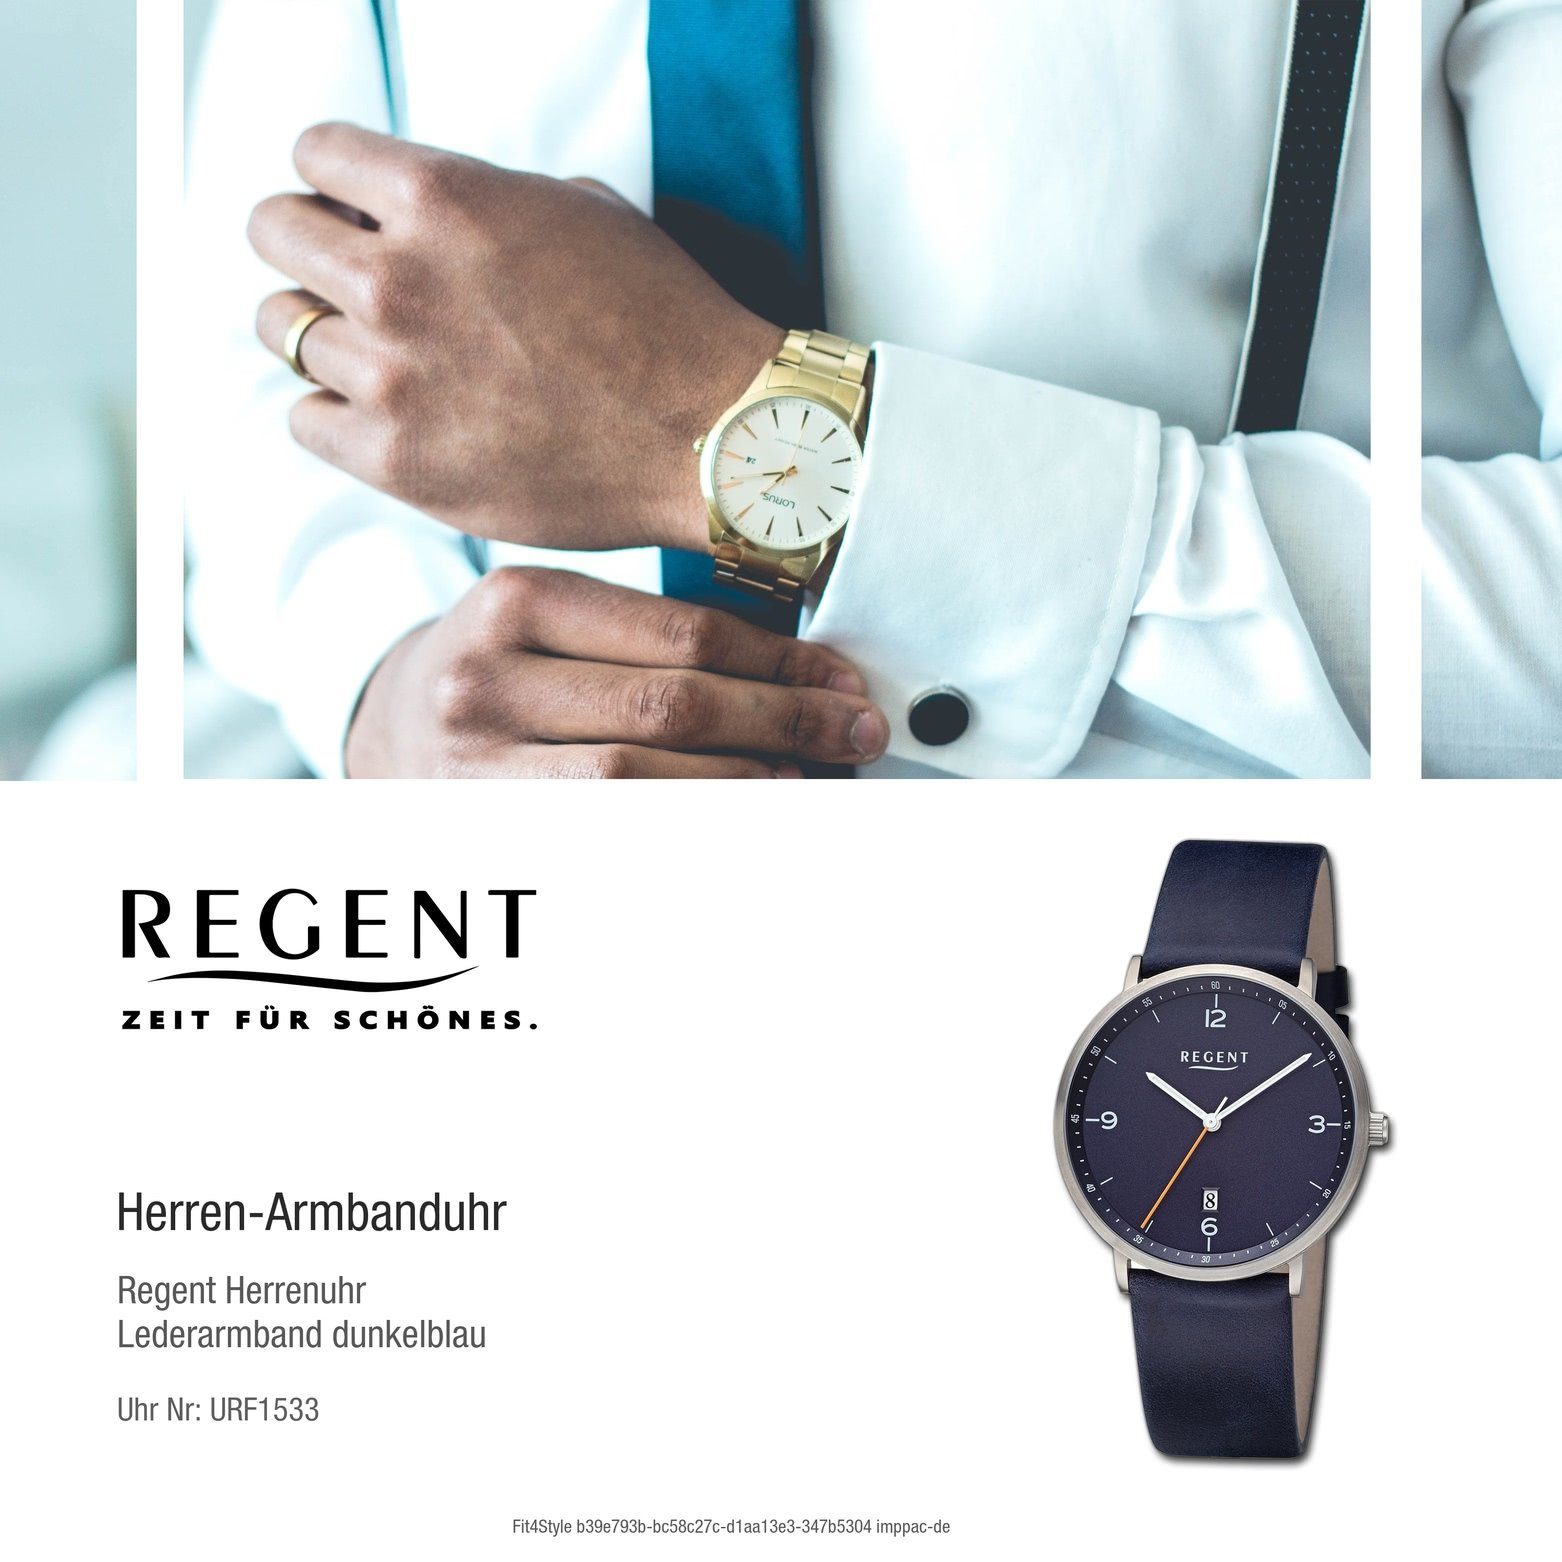 Armbanduhr Quarzuhr Regent Herren groß Lederarmband Regent 39mm), Analog, Armbanduhr Herren extra rund, (ca.